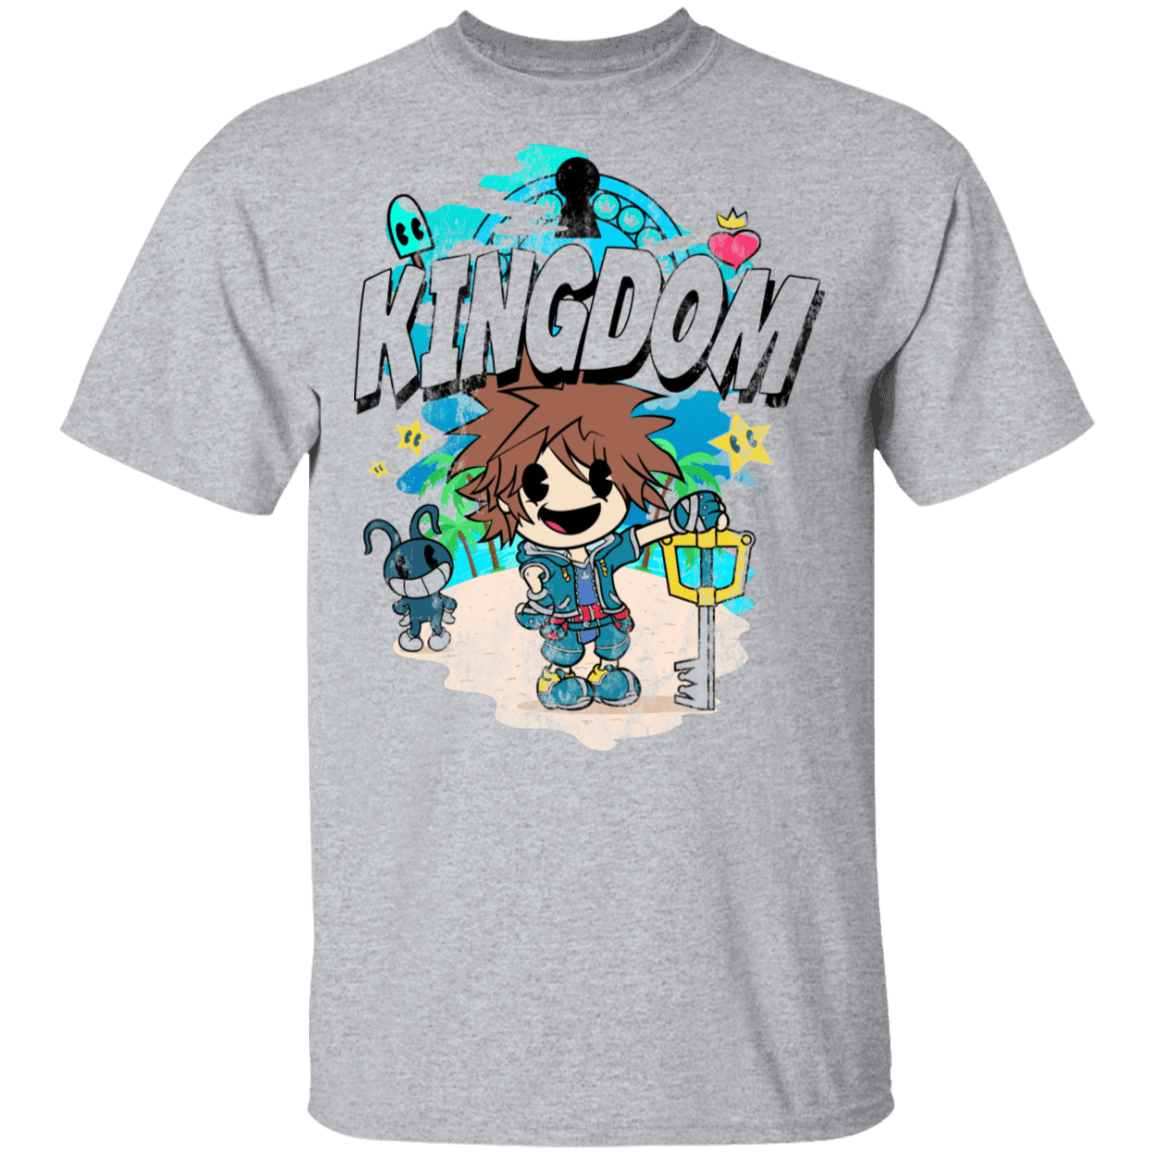 T-Shirts Sport Grey / S Kingdom Cartoon T-Shirt